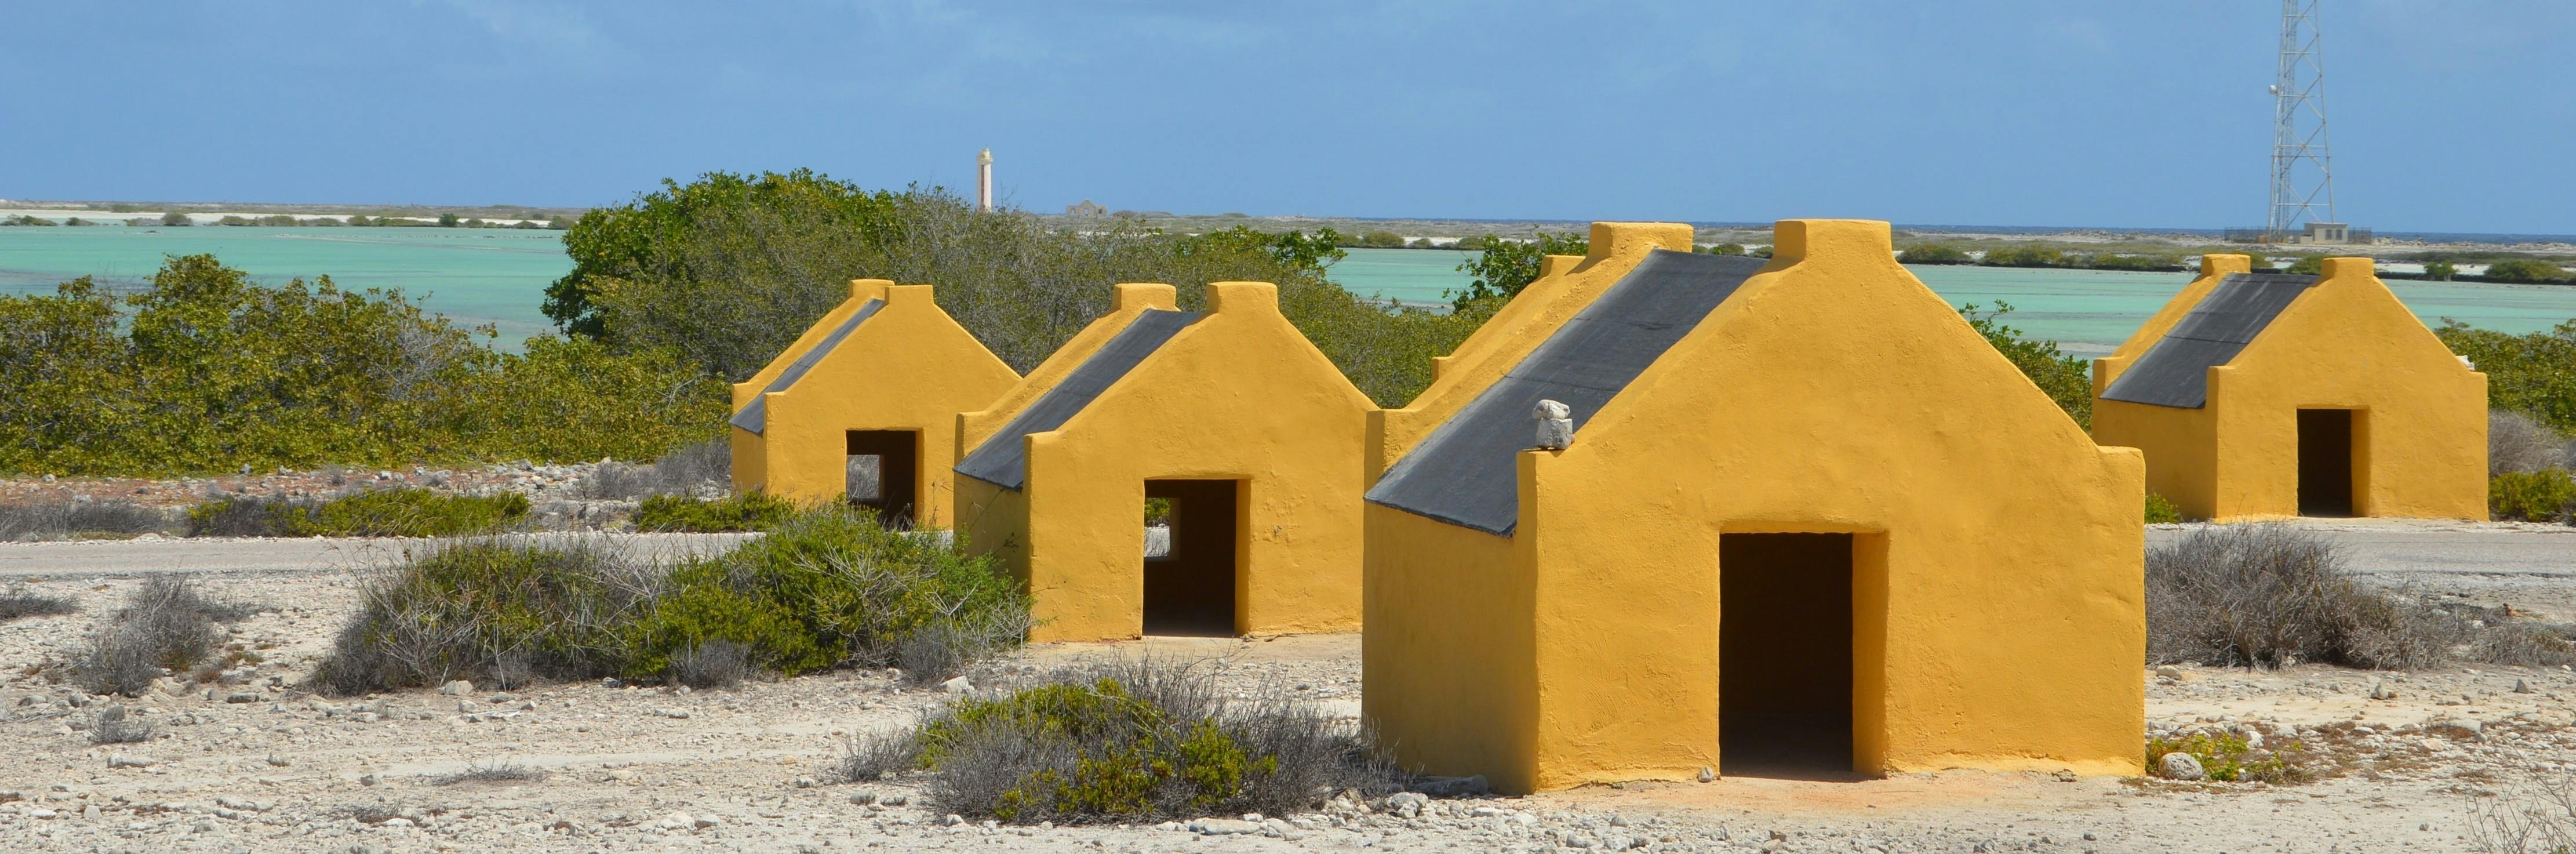 Descubra Bonaire em uma excursão guiada pela ilha